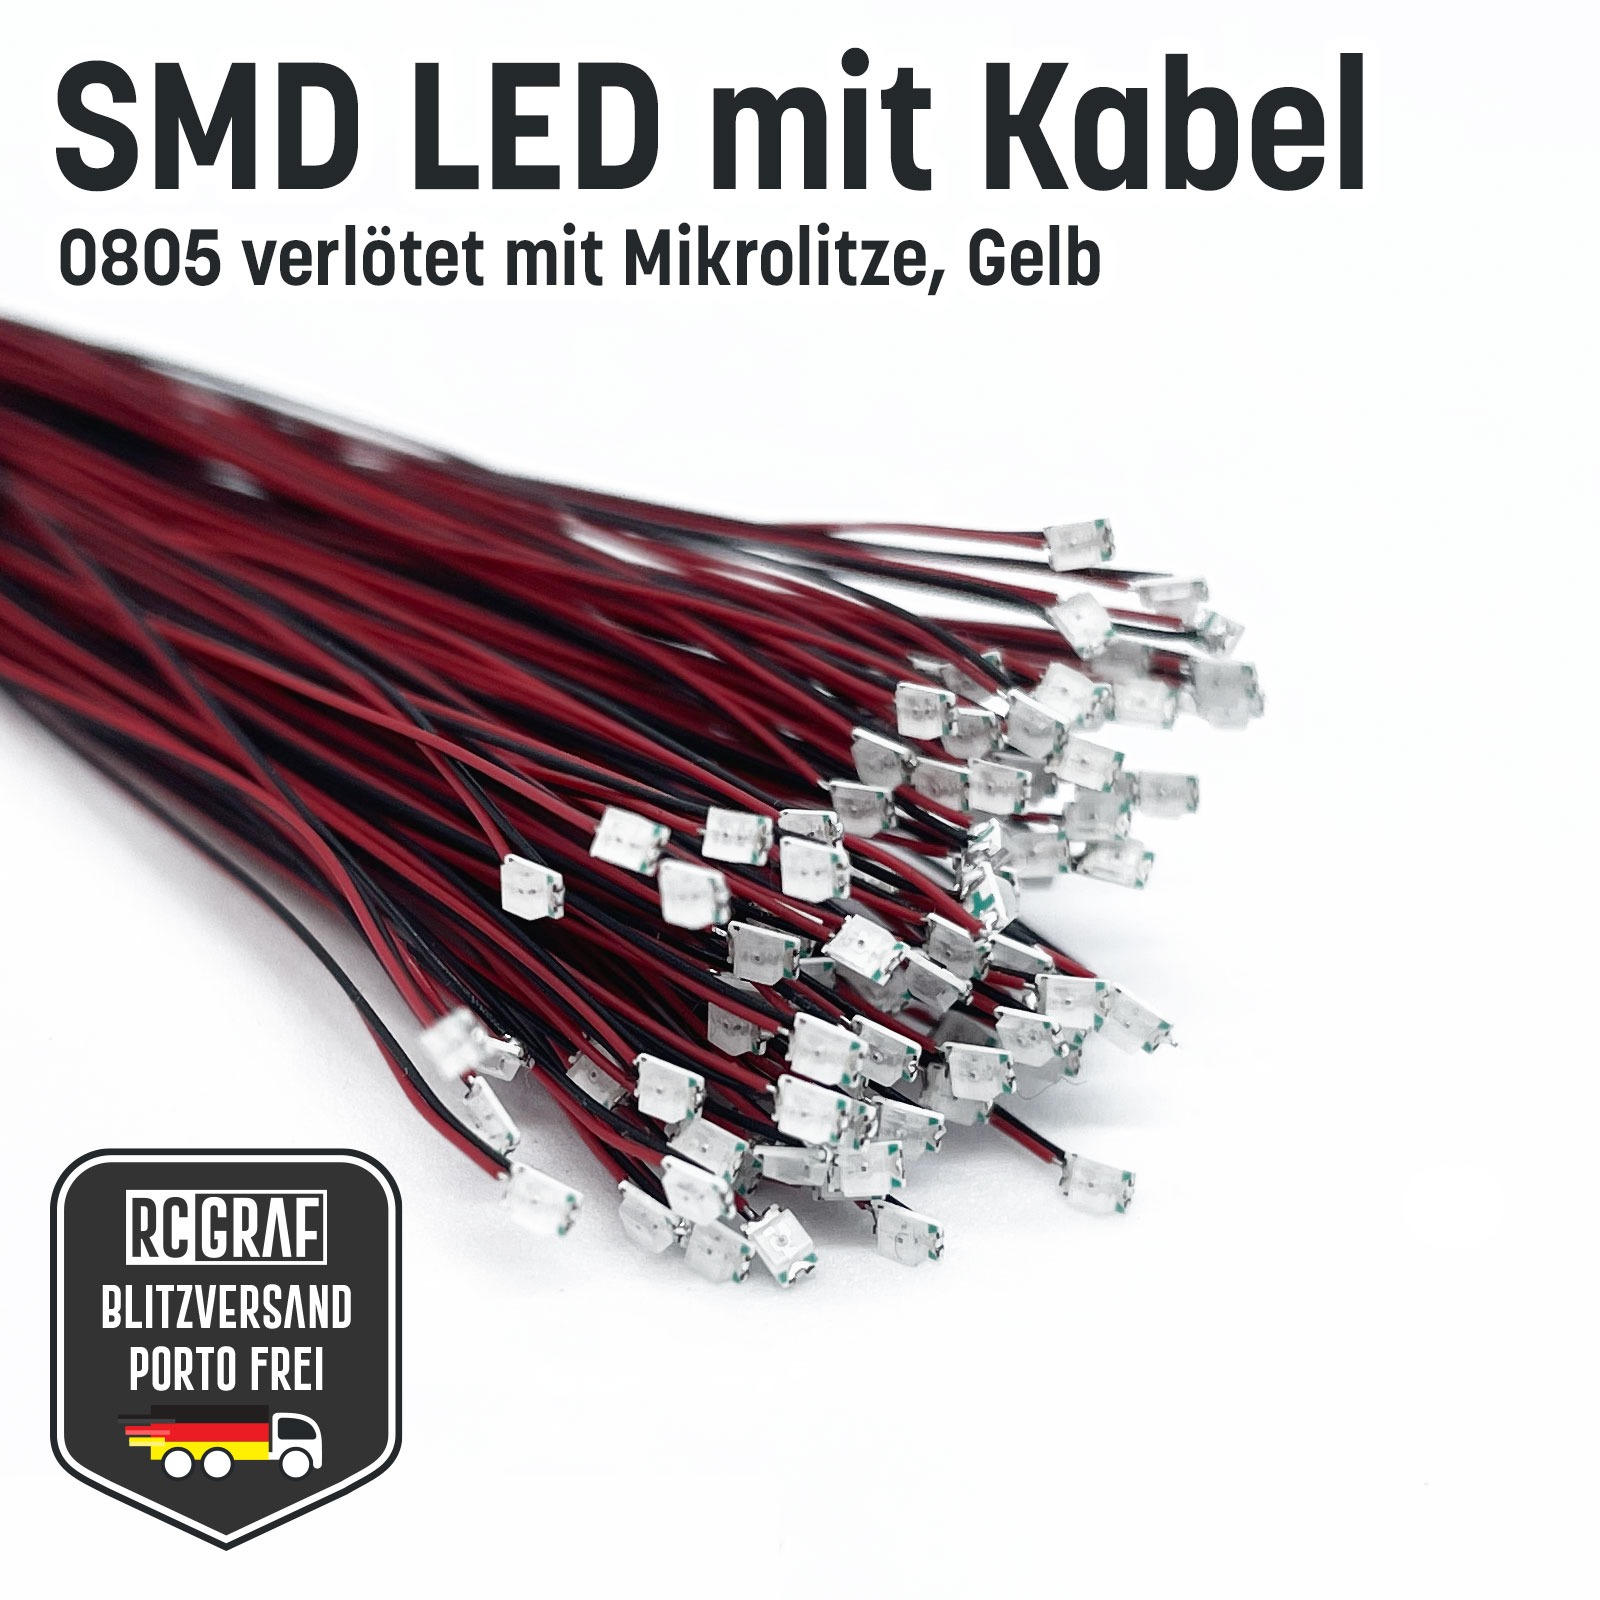 SMD LED 0805 Microlitze 30cm verlötet 9